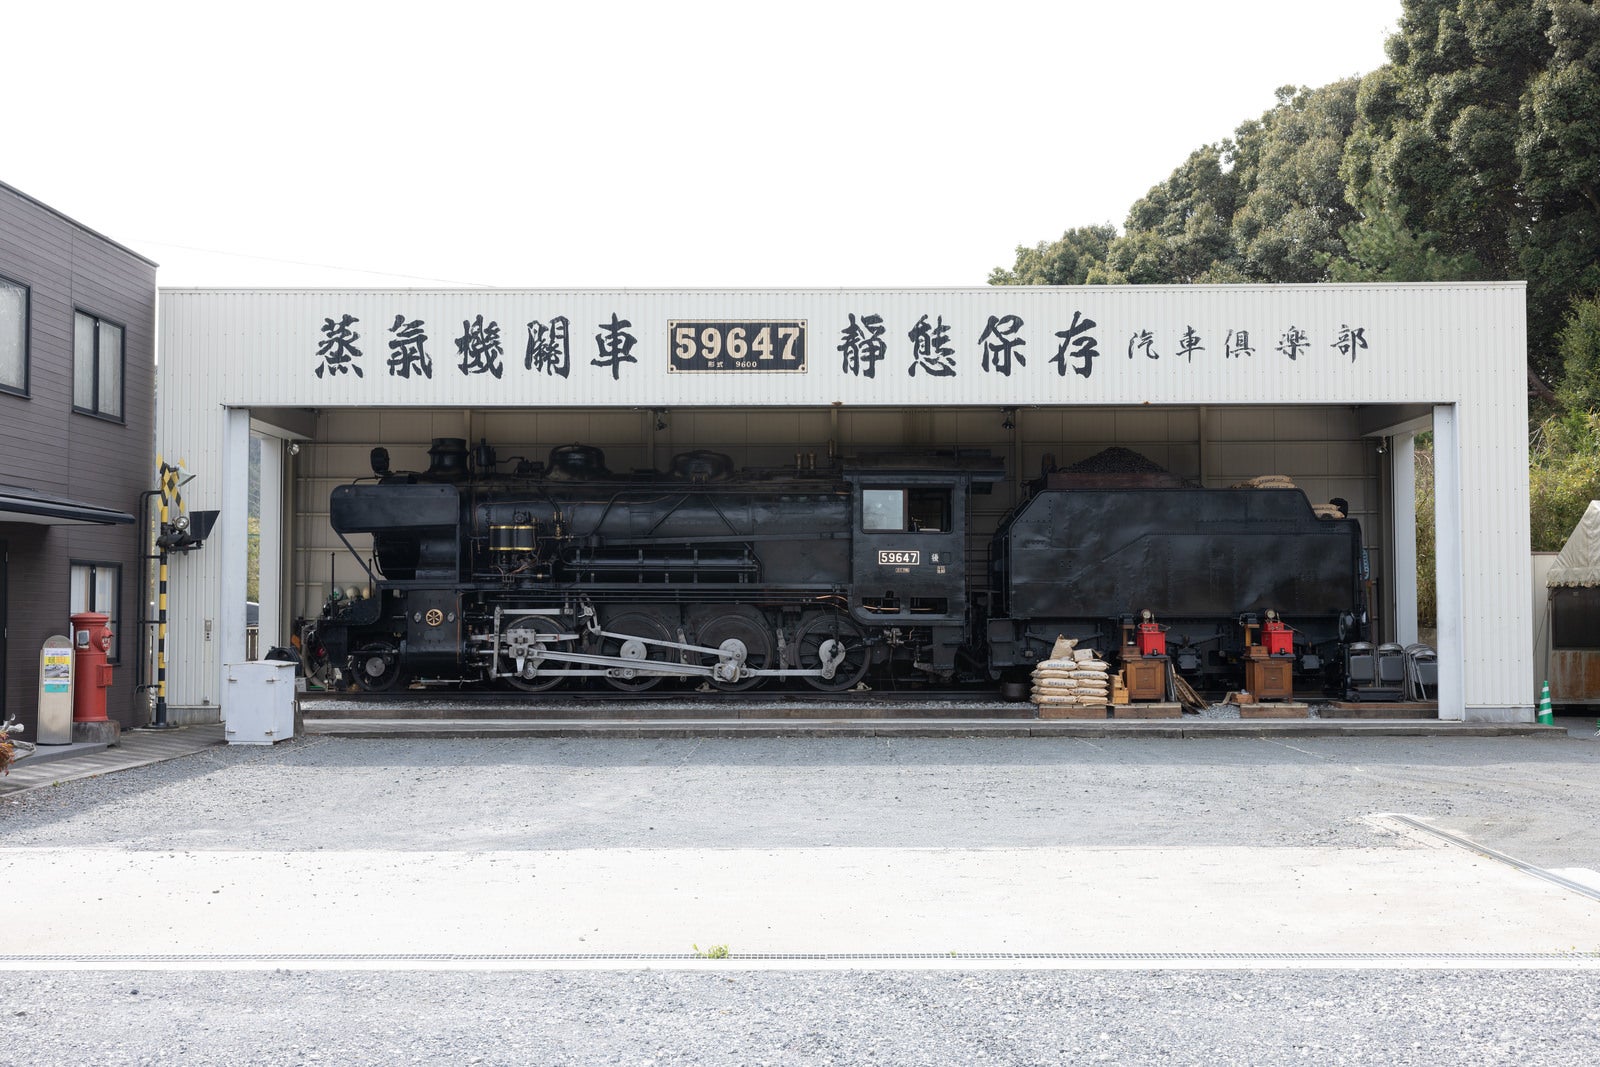 「敷地内の静態保存蒸気機関車・9600形59647号機の全景」の写真